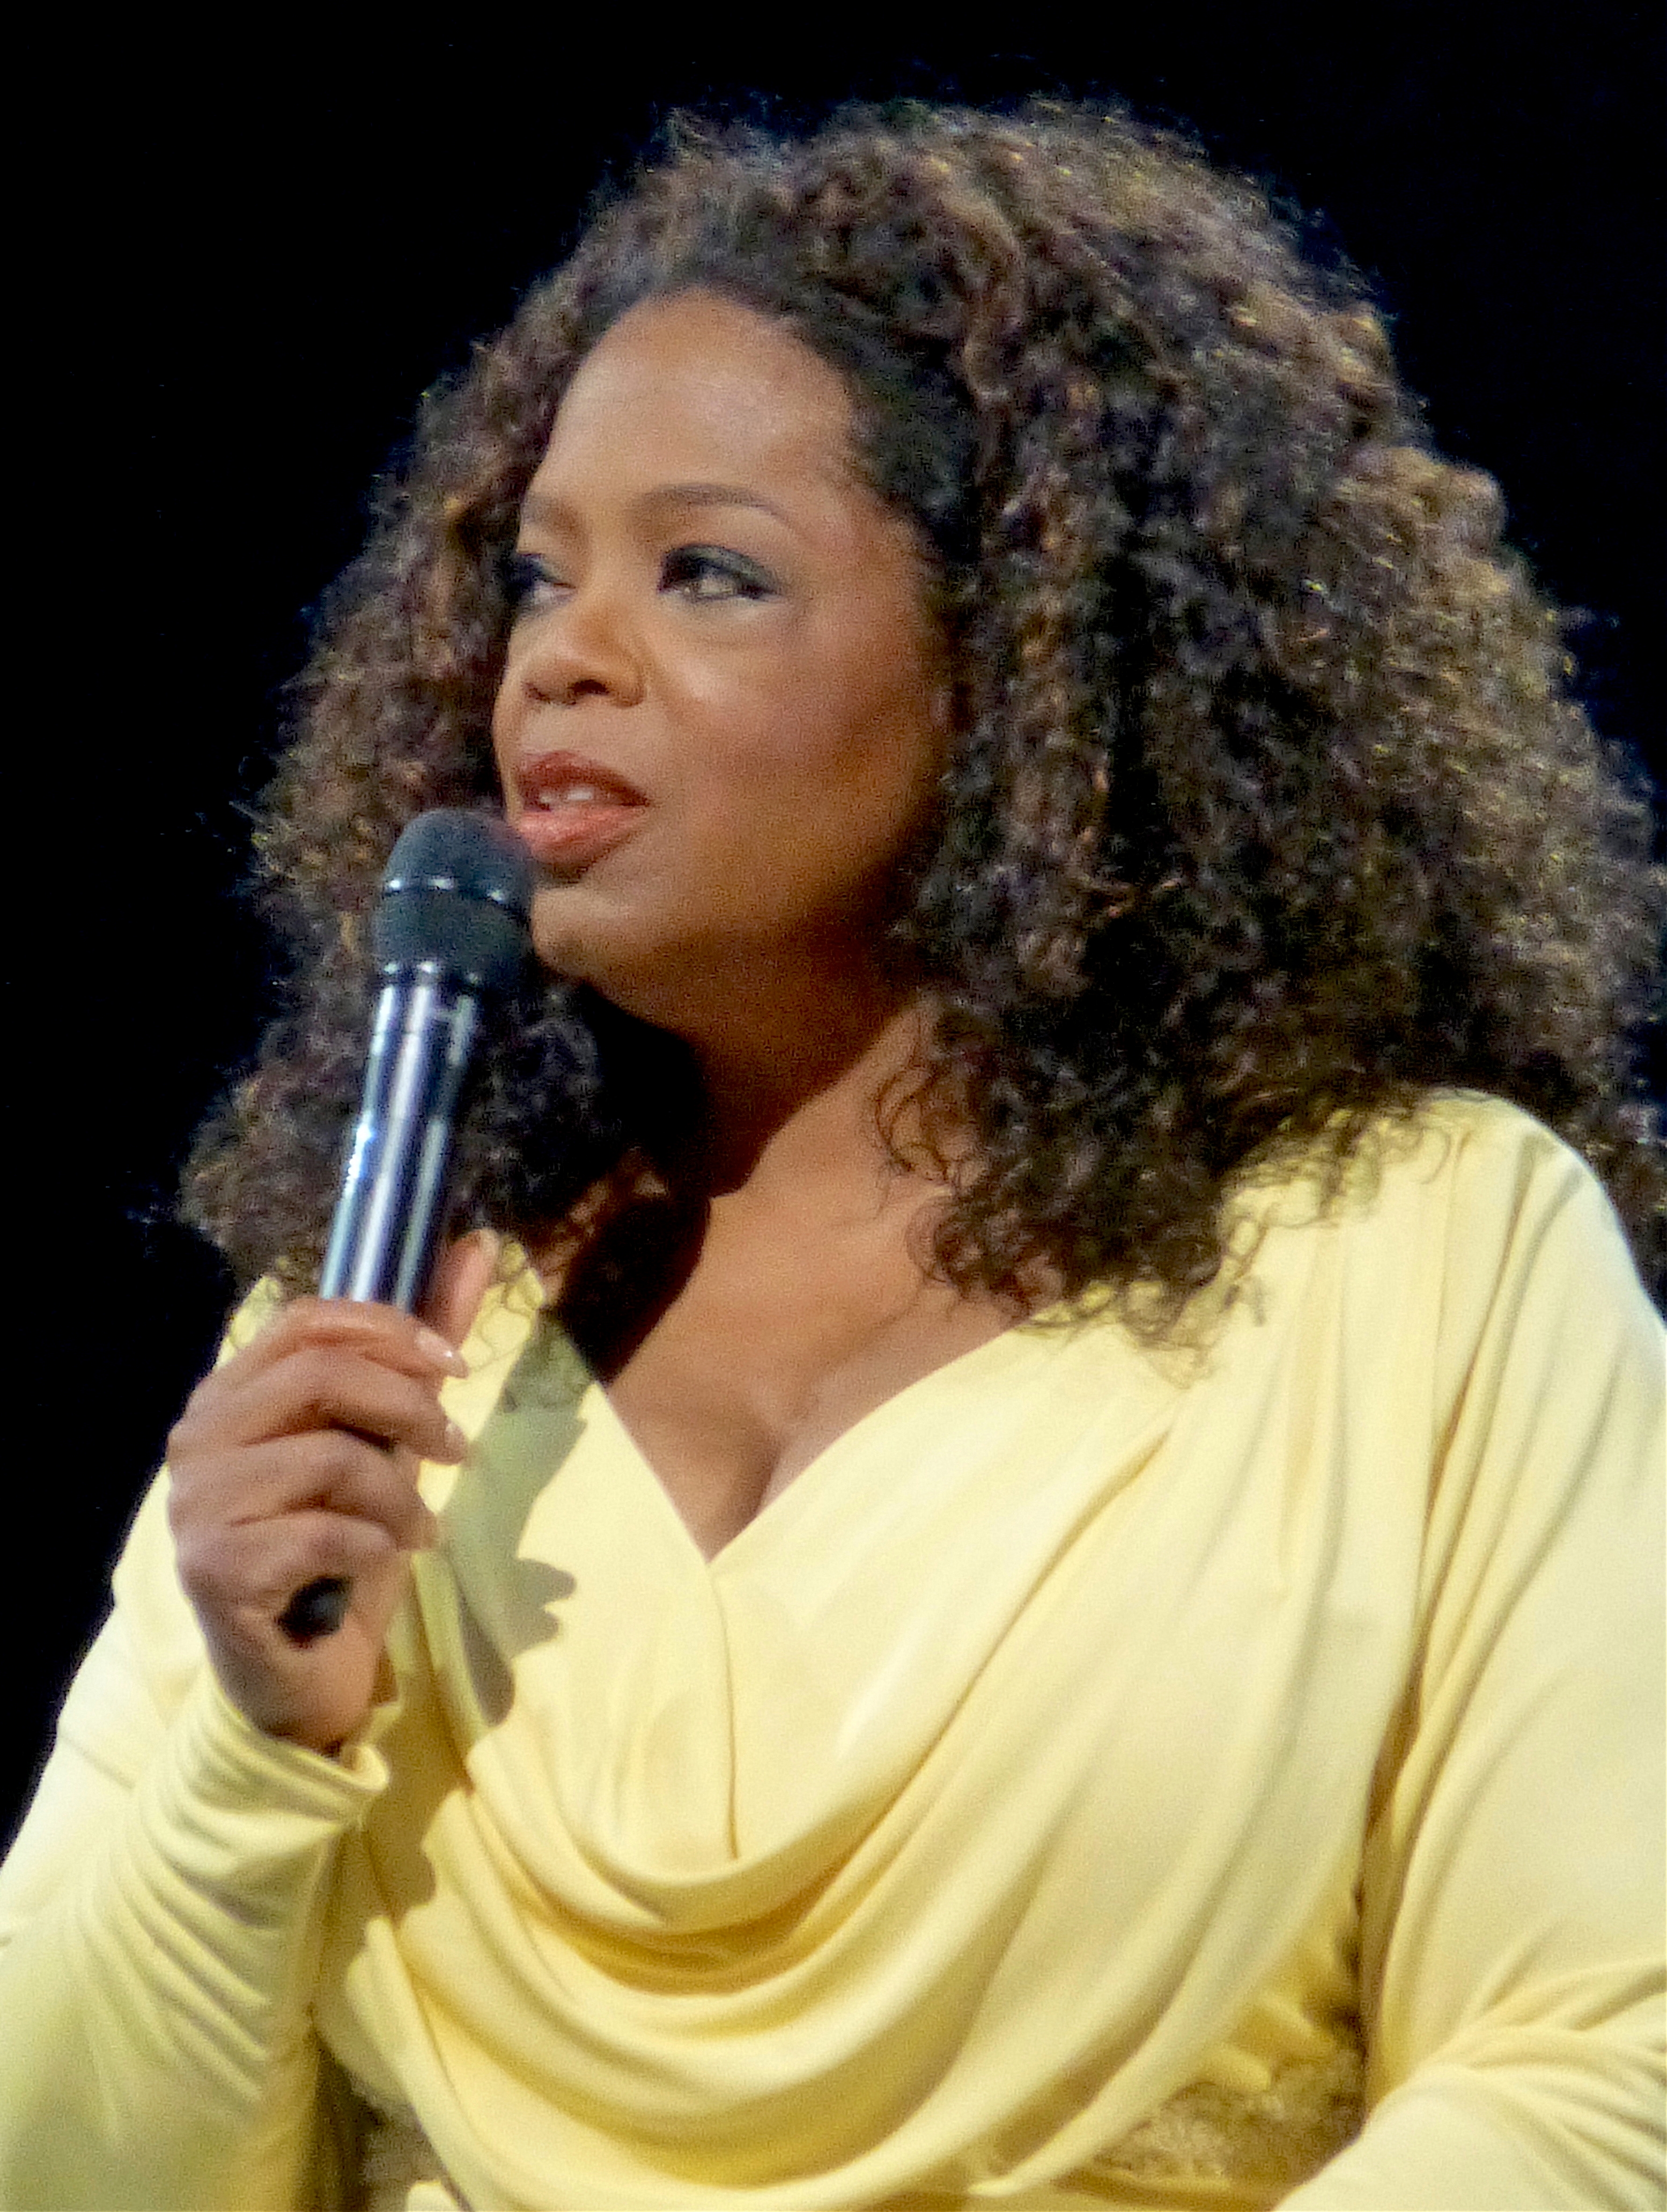 auteur Oprah Winfrey de la citation Je considère les problèmes comme des opportunités et j'utilise chaque personne, chaque incident et chaque rencontre comme une opportunité de montrer une partie plus aimante de moi-même.